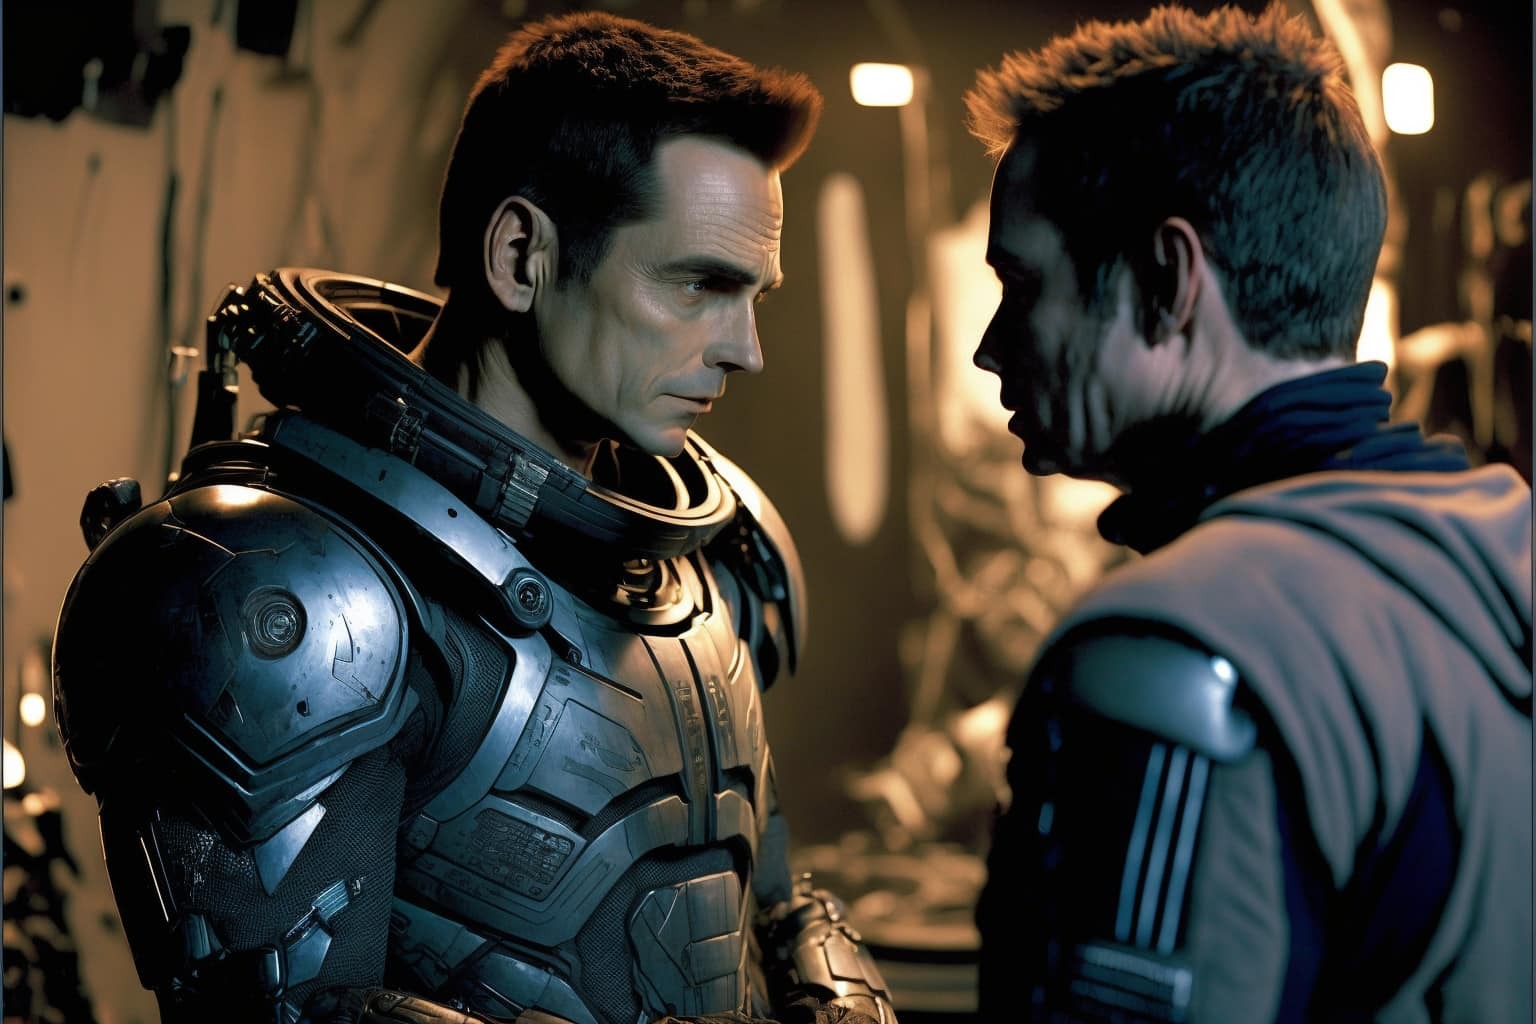 Mass Effect by James Gunn and Neural Networks - Midjourney, Нейронные сети, Mass effect, Games, Art, Longpost